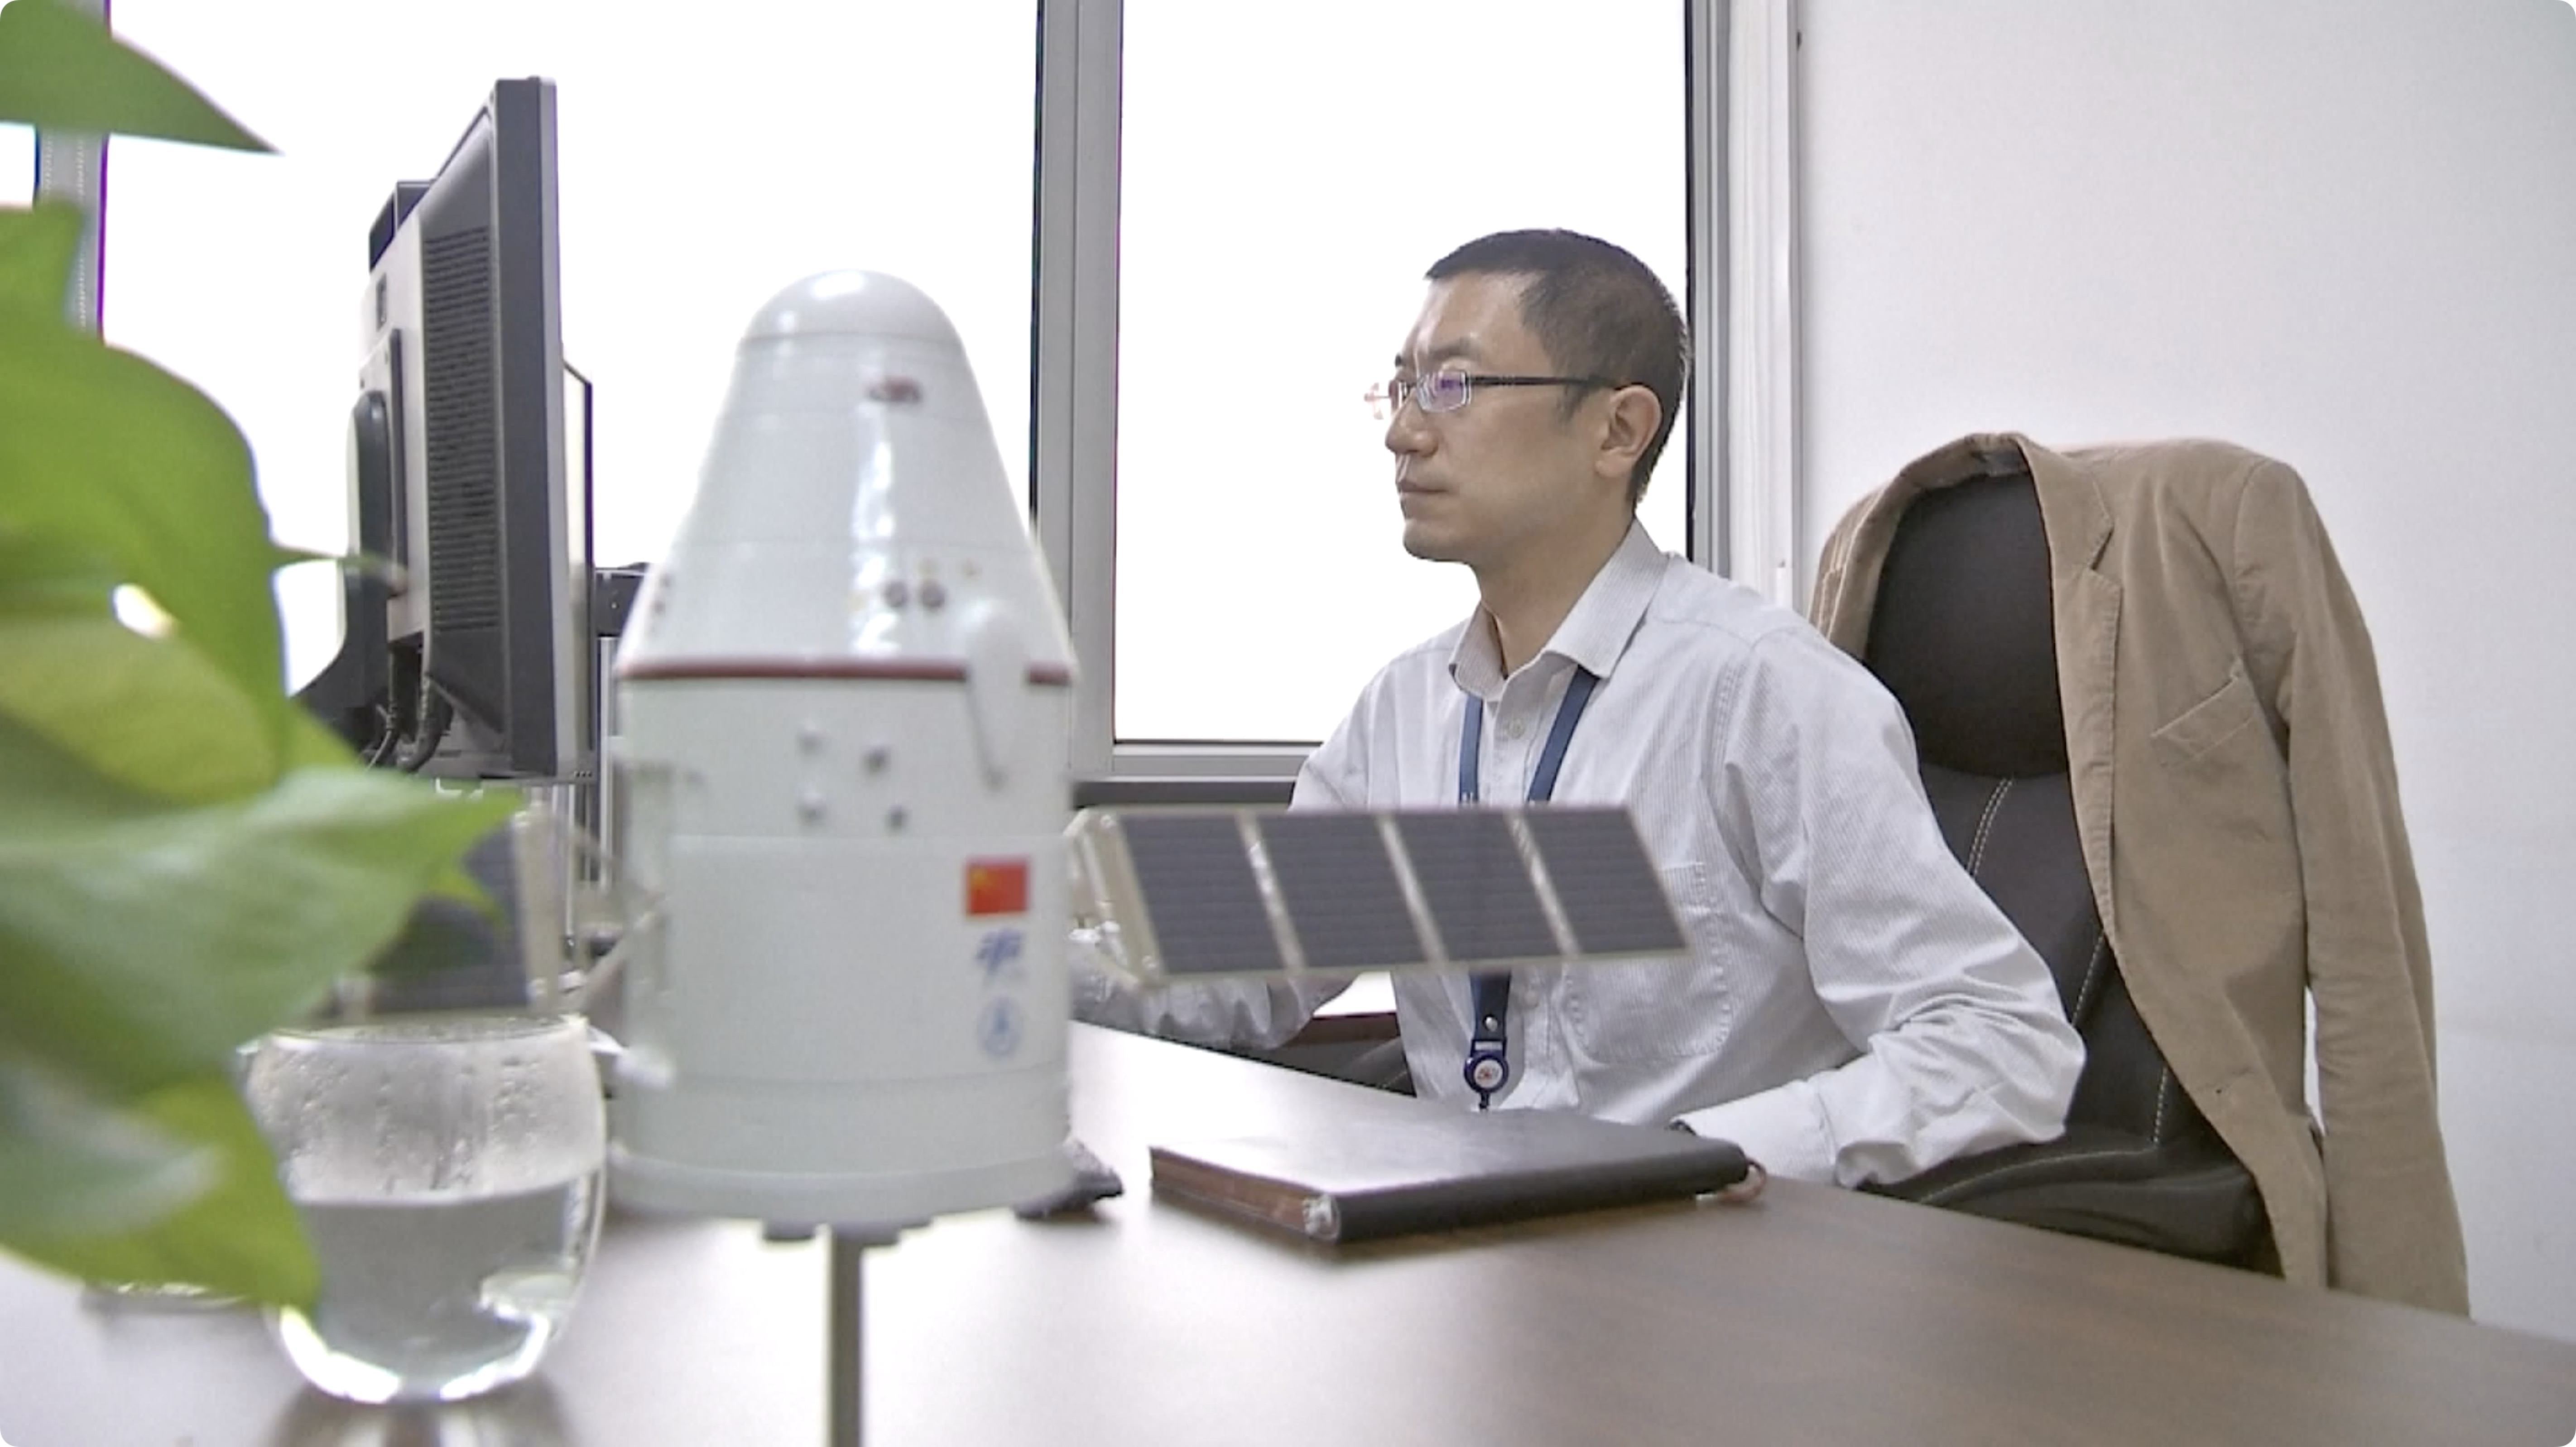 El joven ingeniero está dedicado a sus habilidades e interés en la exploración espacial en China.